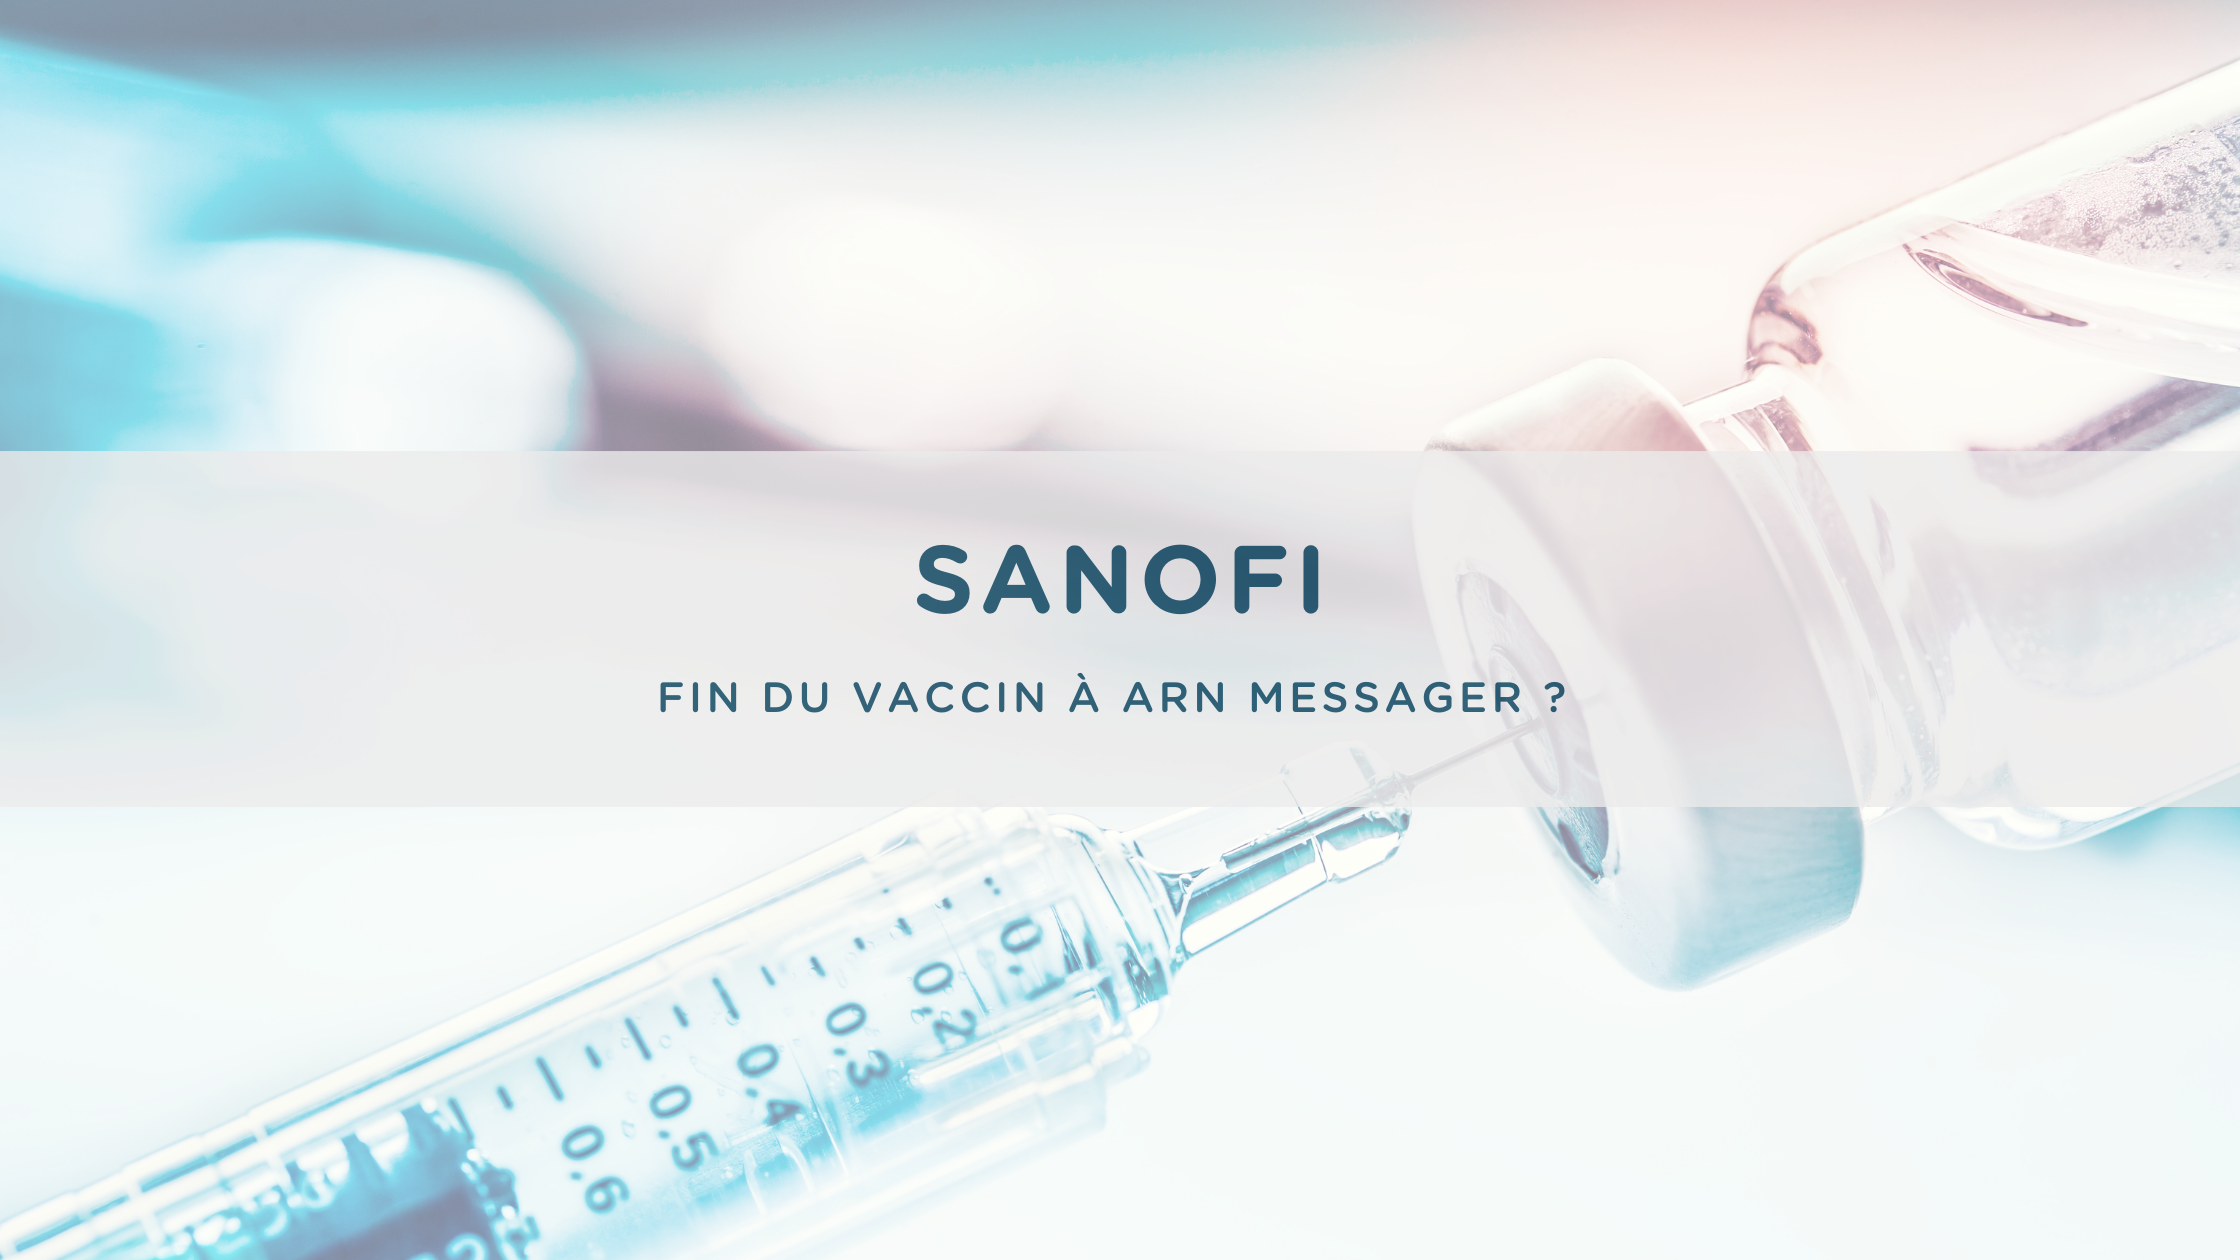 Sanofi ARN messager